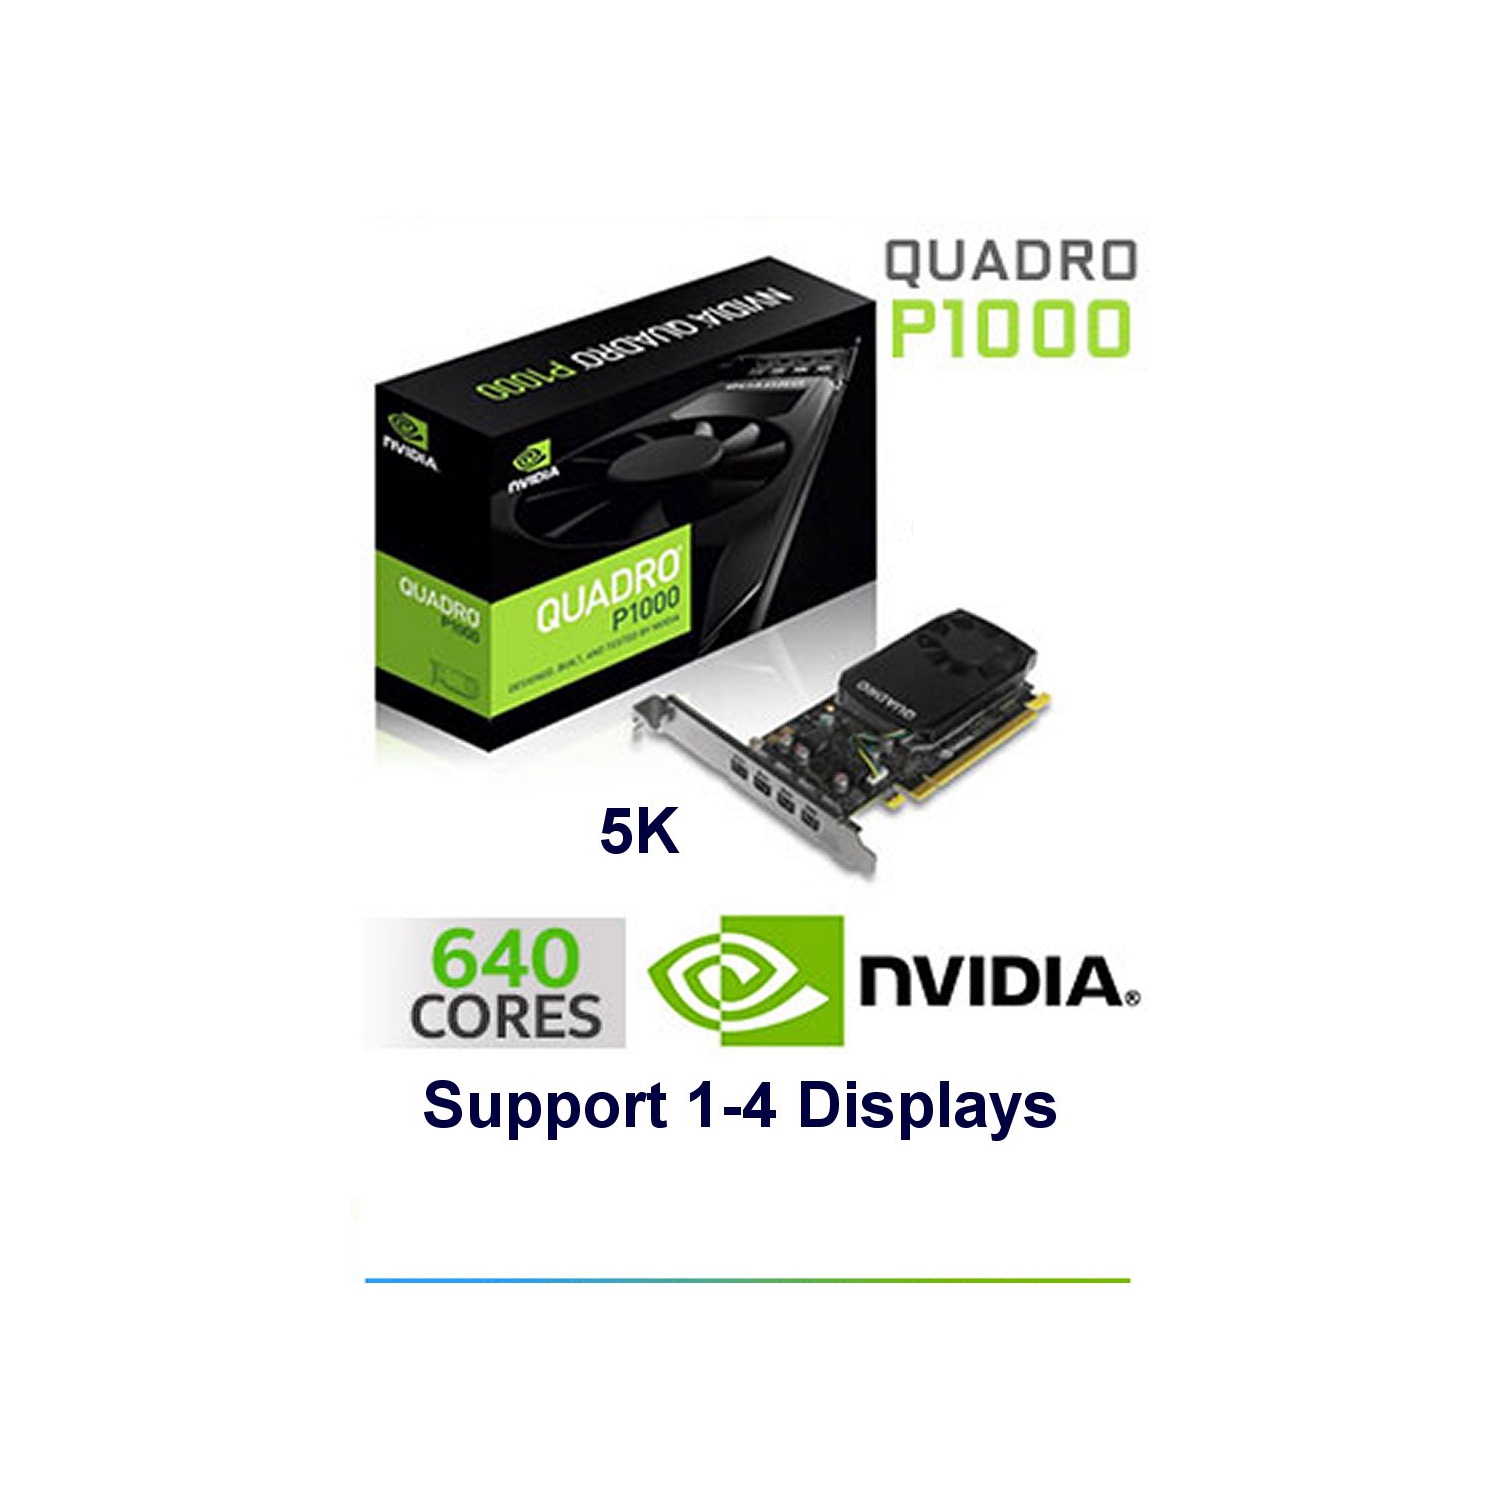 Refurbished (Good) 4.0GB Nvidia Quadro P1000 4K/5K Quad Display PCI Express videocard